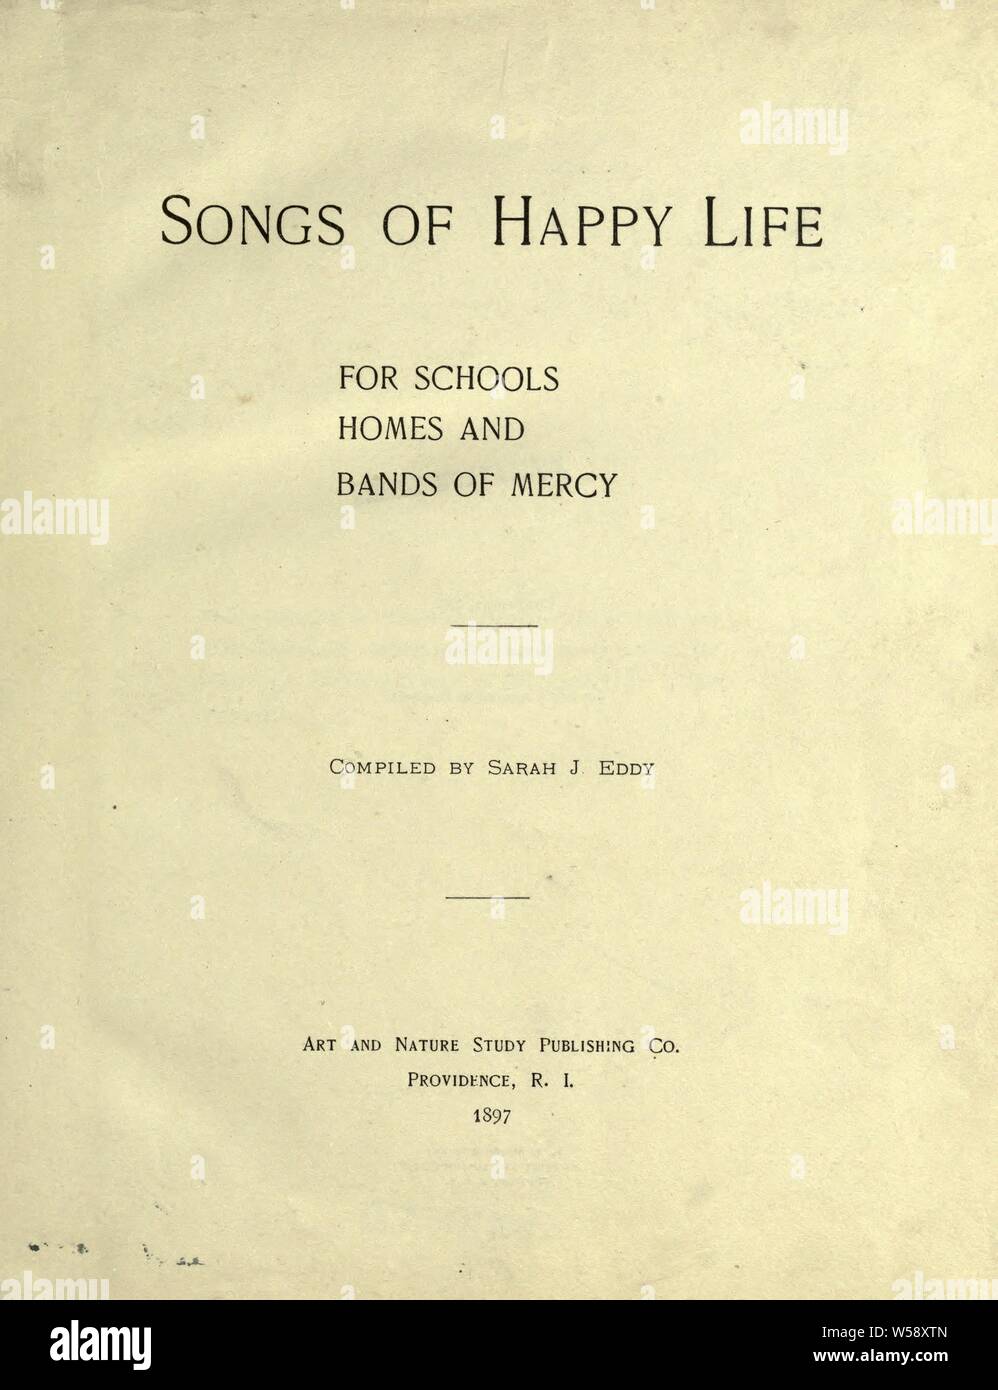 Le canzoni di felice della vita : Per le scuole, case e bande di misericordia : Eddy, Sarah J Foto Stock